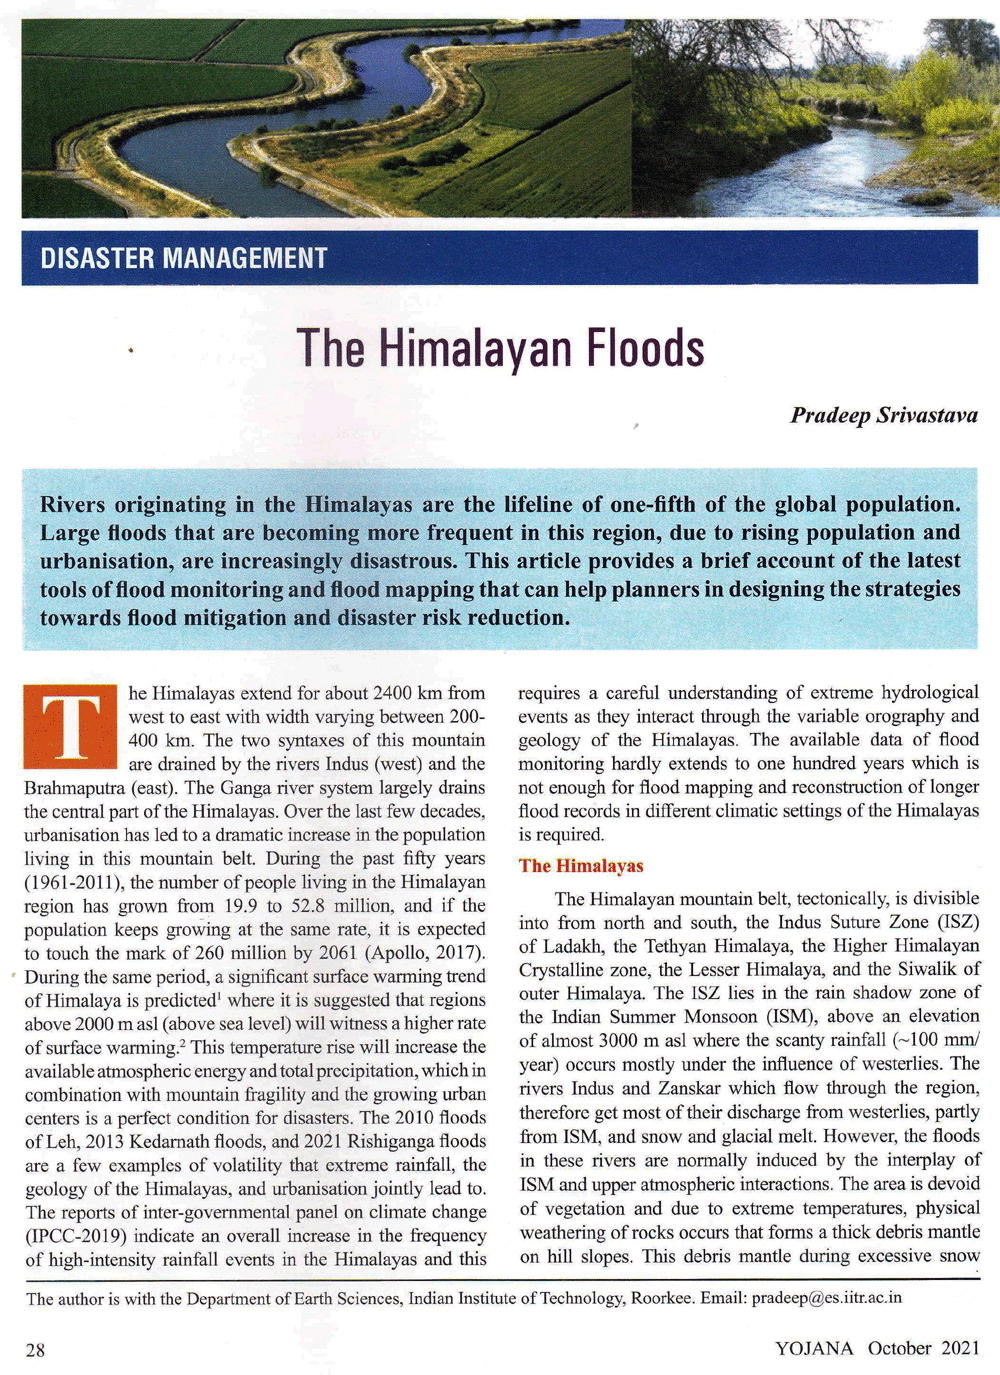 The Himalayan Floods